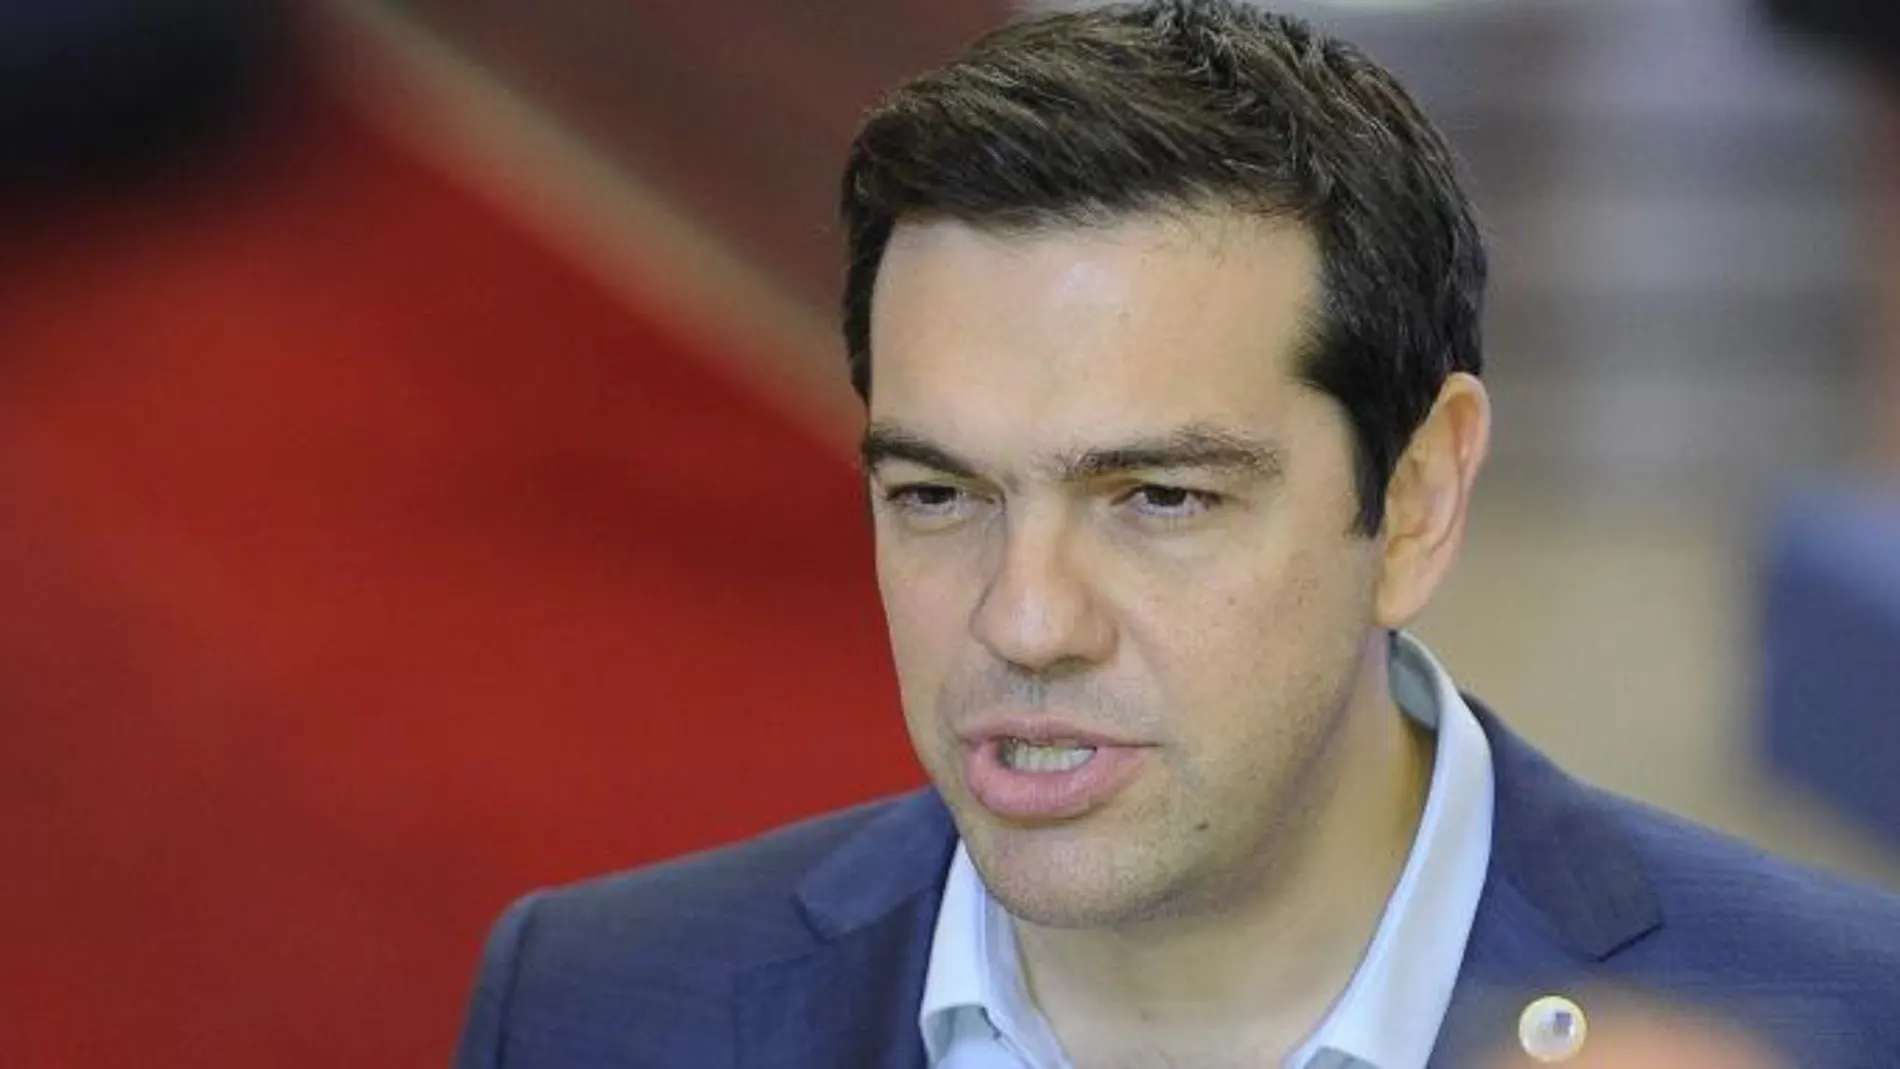 Alexis Tsipras atiende a los medios al término de la cumbre sobre la crisis griega tras alcanzar un acuerdo con la Eurozona.